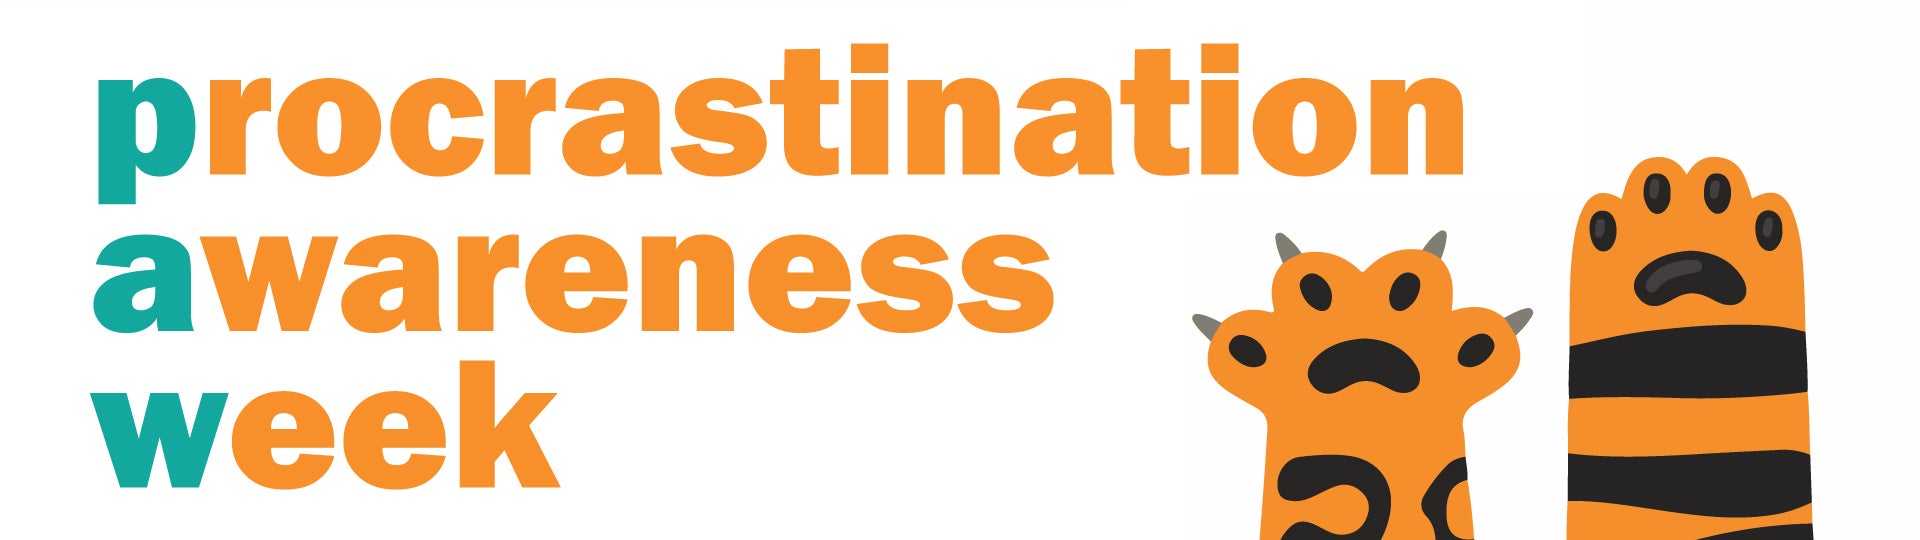 Procrastination awareness week